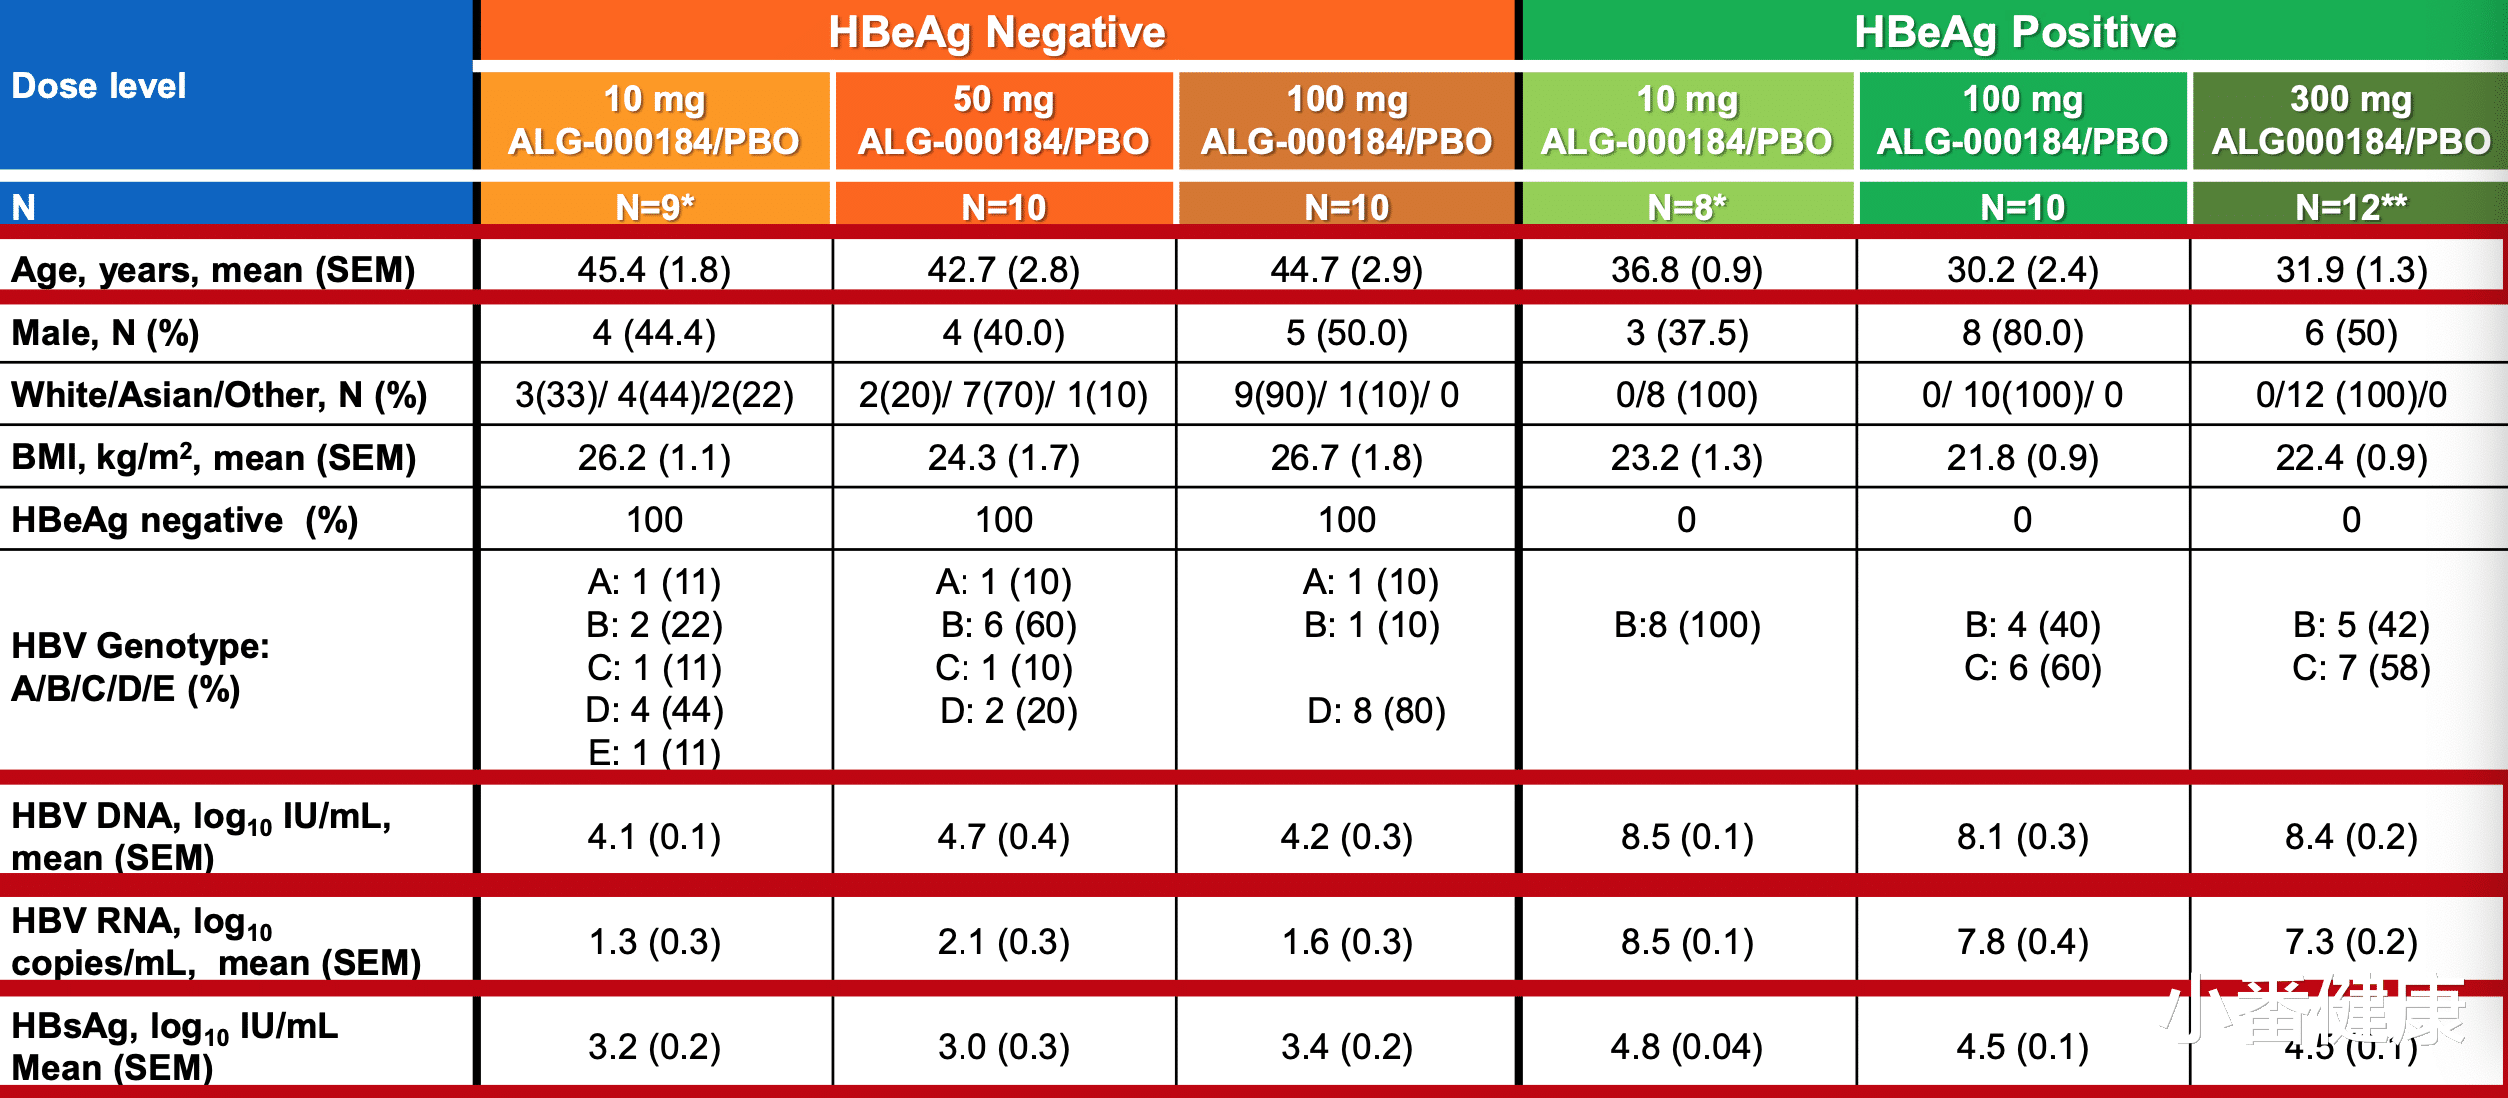 乙肝|乙肝在研新药ALG-000184，无论HBeAg状态，迅速降低HBVDNA及HBsAg